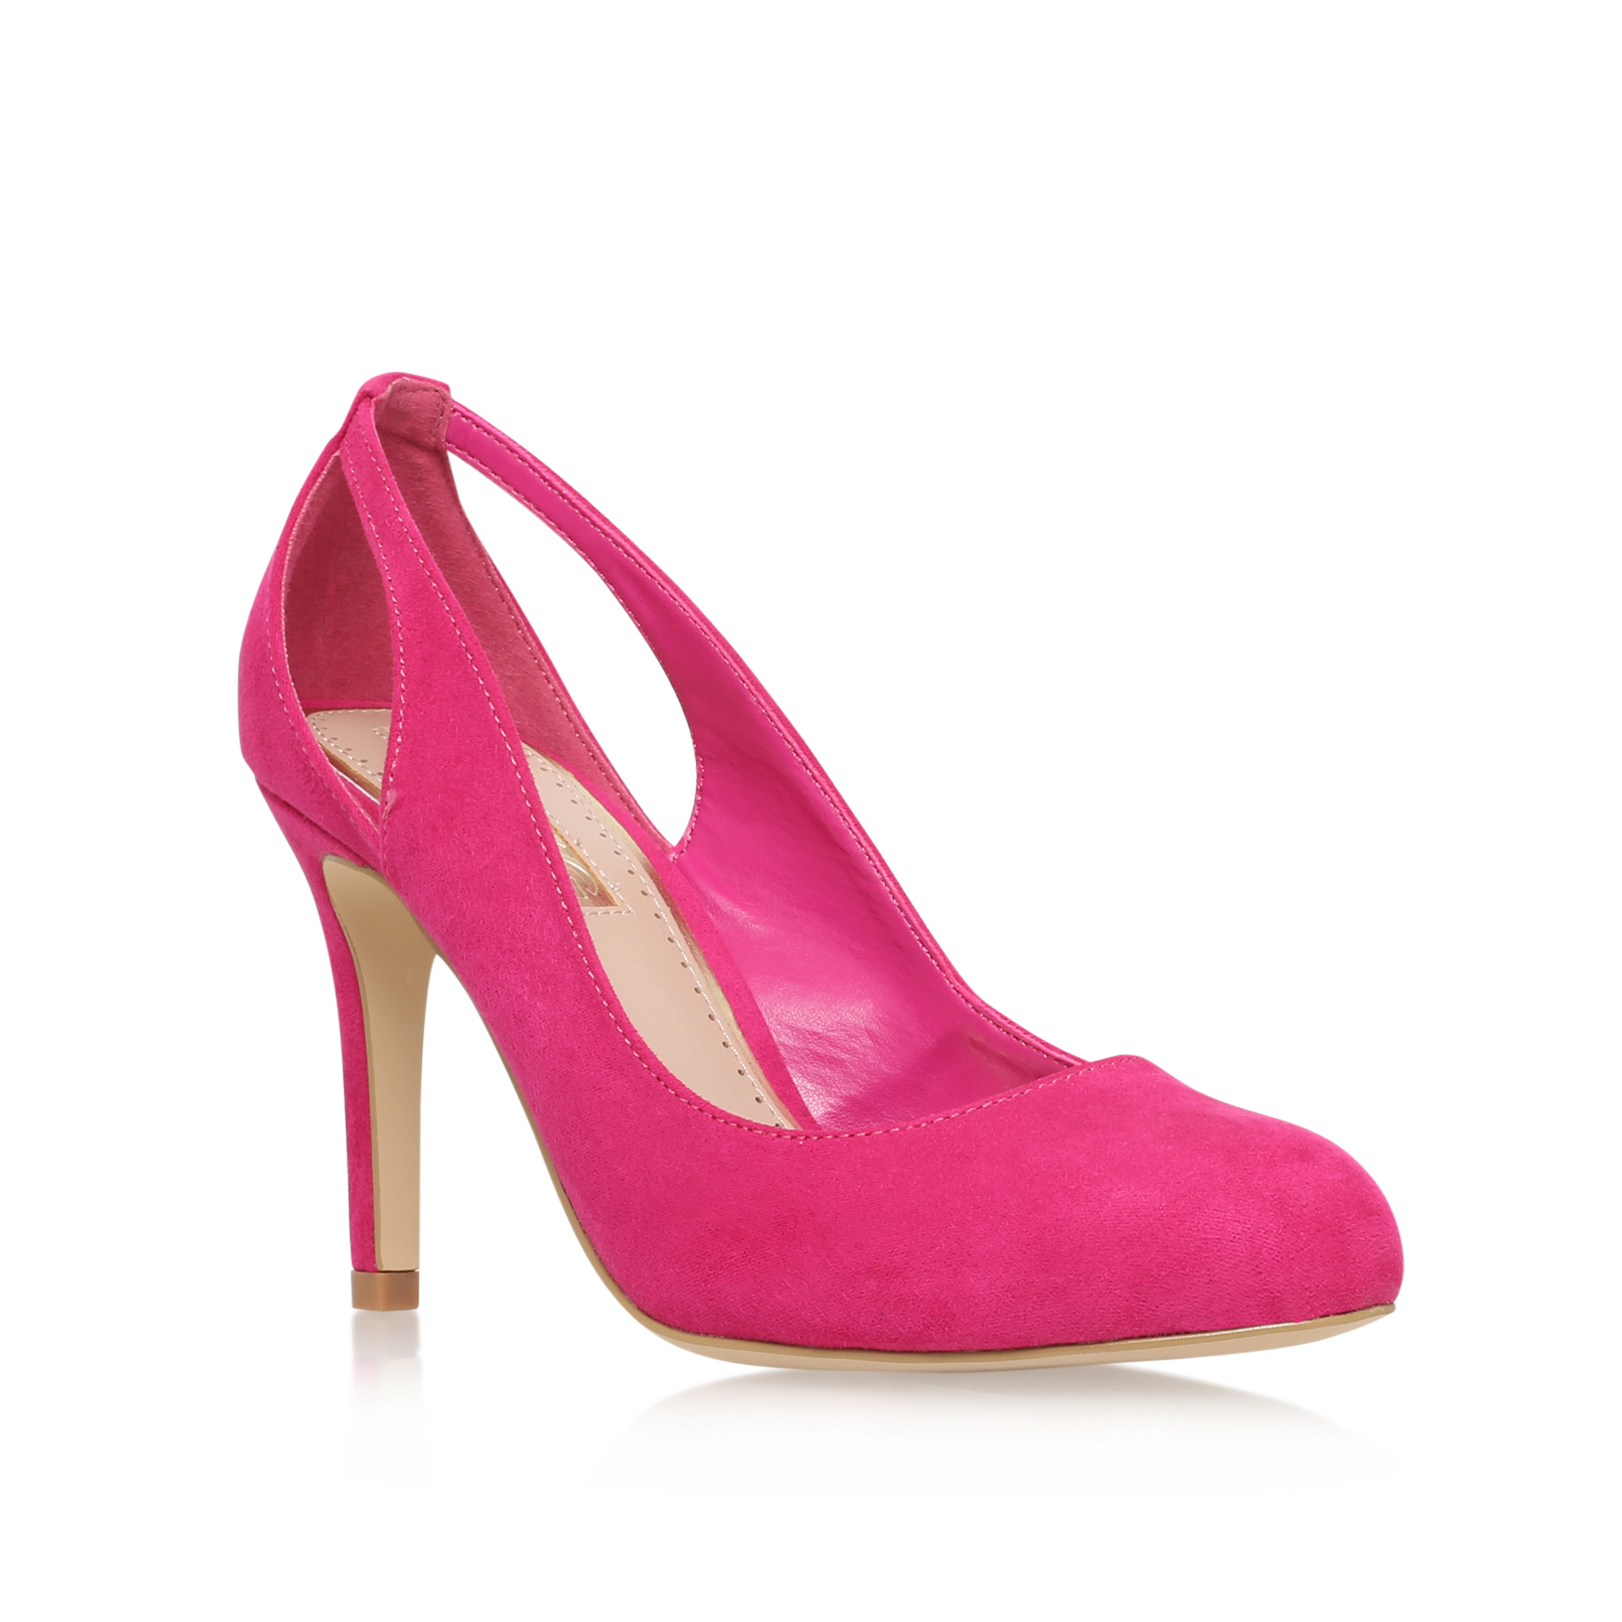 BERNADETTE Miss KG Bernadette Pink Comb High Heel Court Shoes by MISS KG